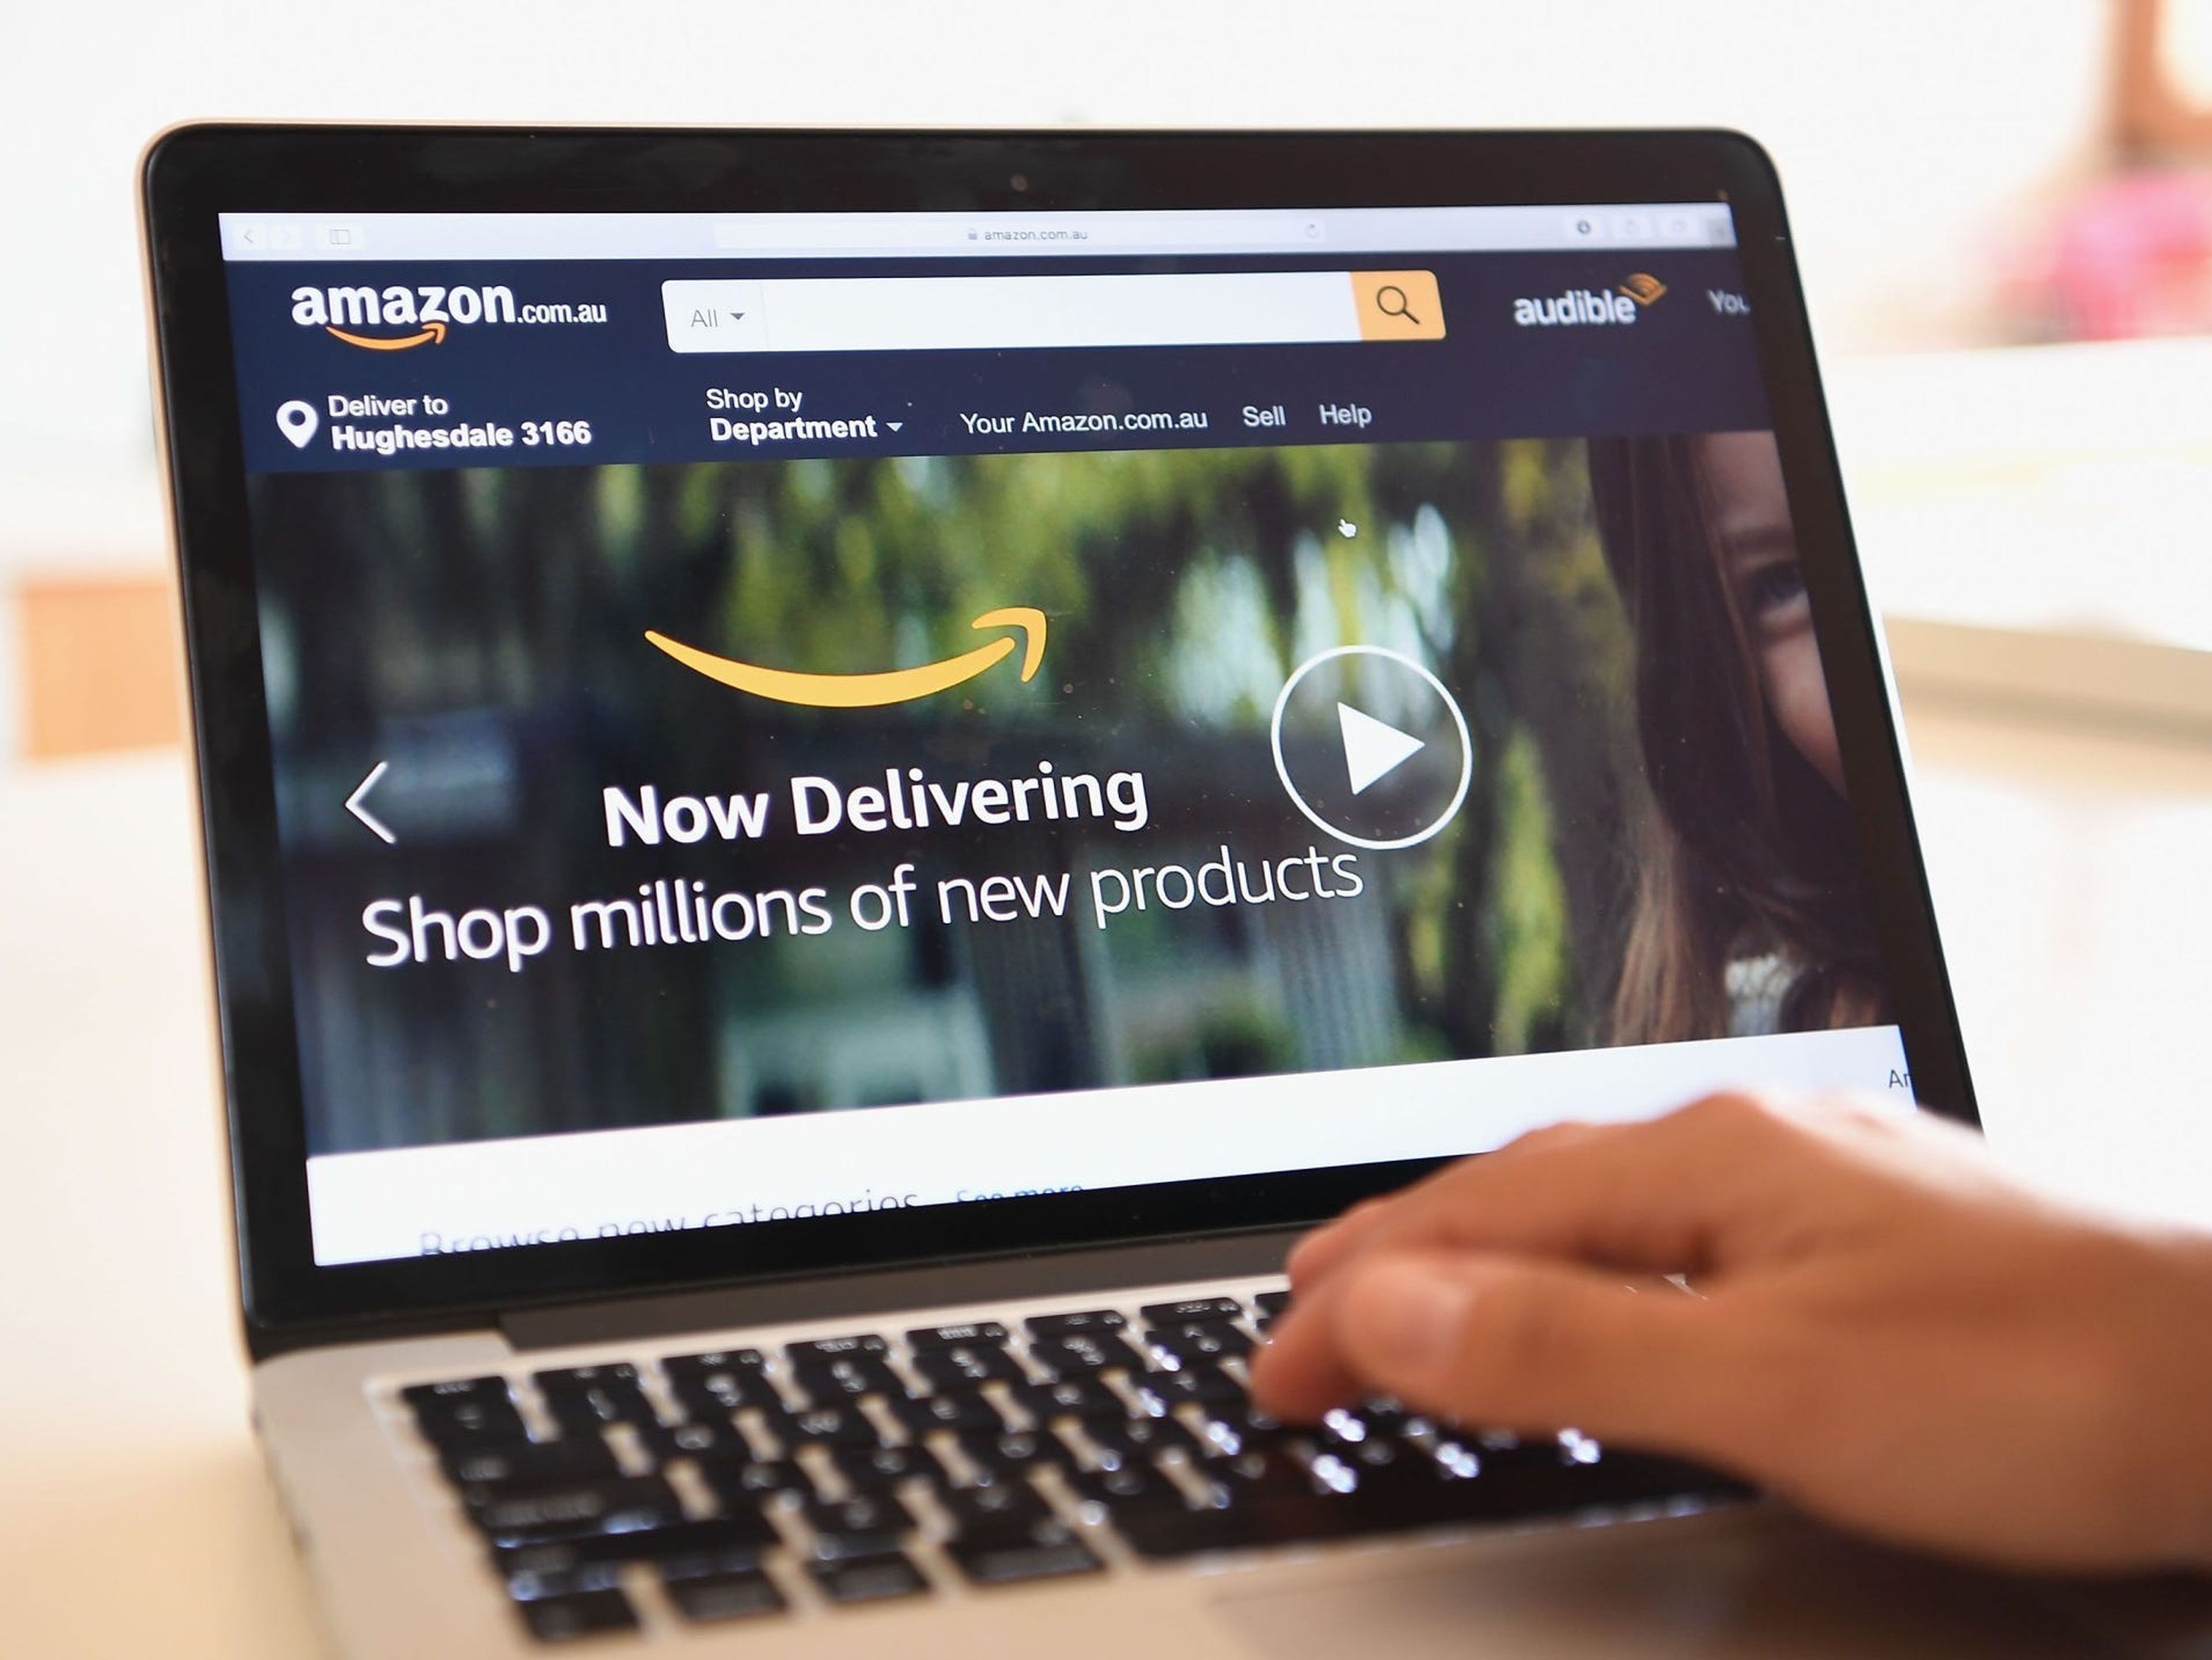 Se descubrieron anuncios de servicios de Amazon en más de 30 webs, según el análisis.